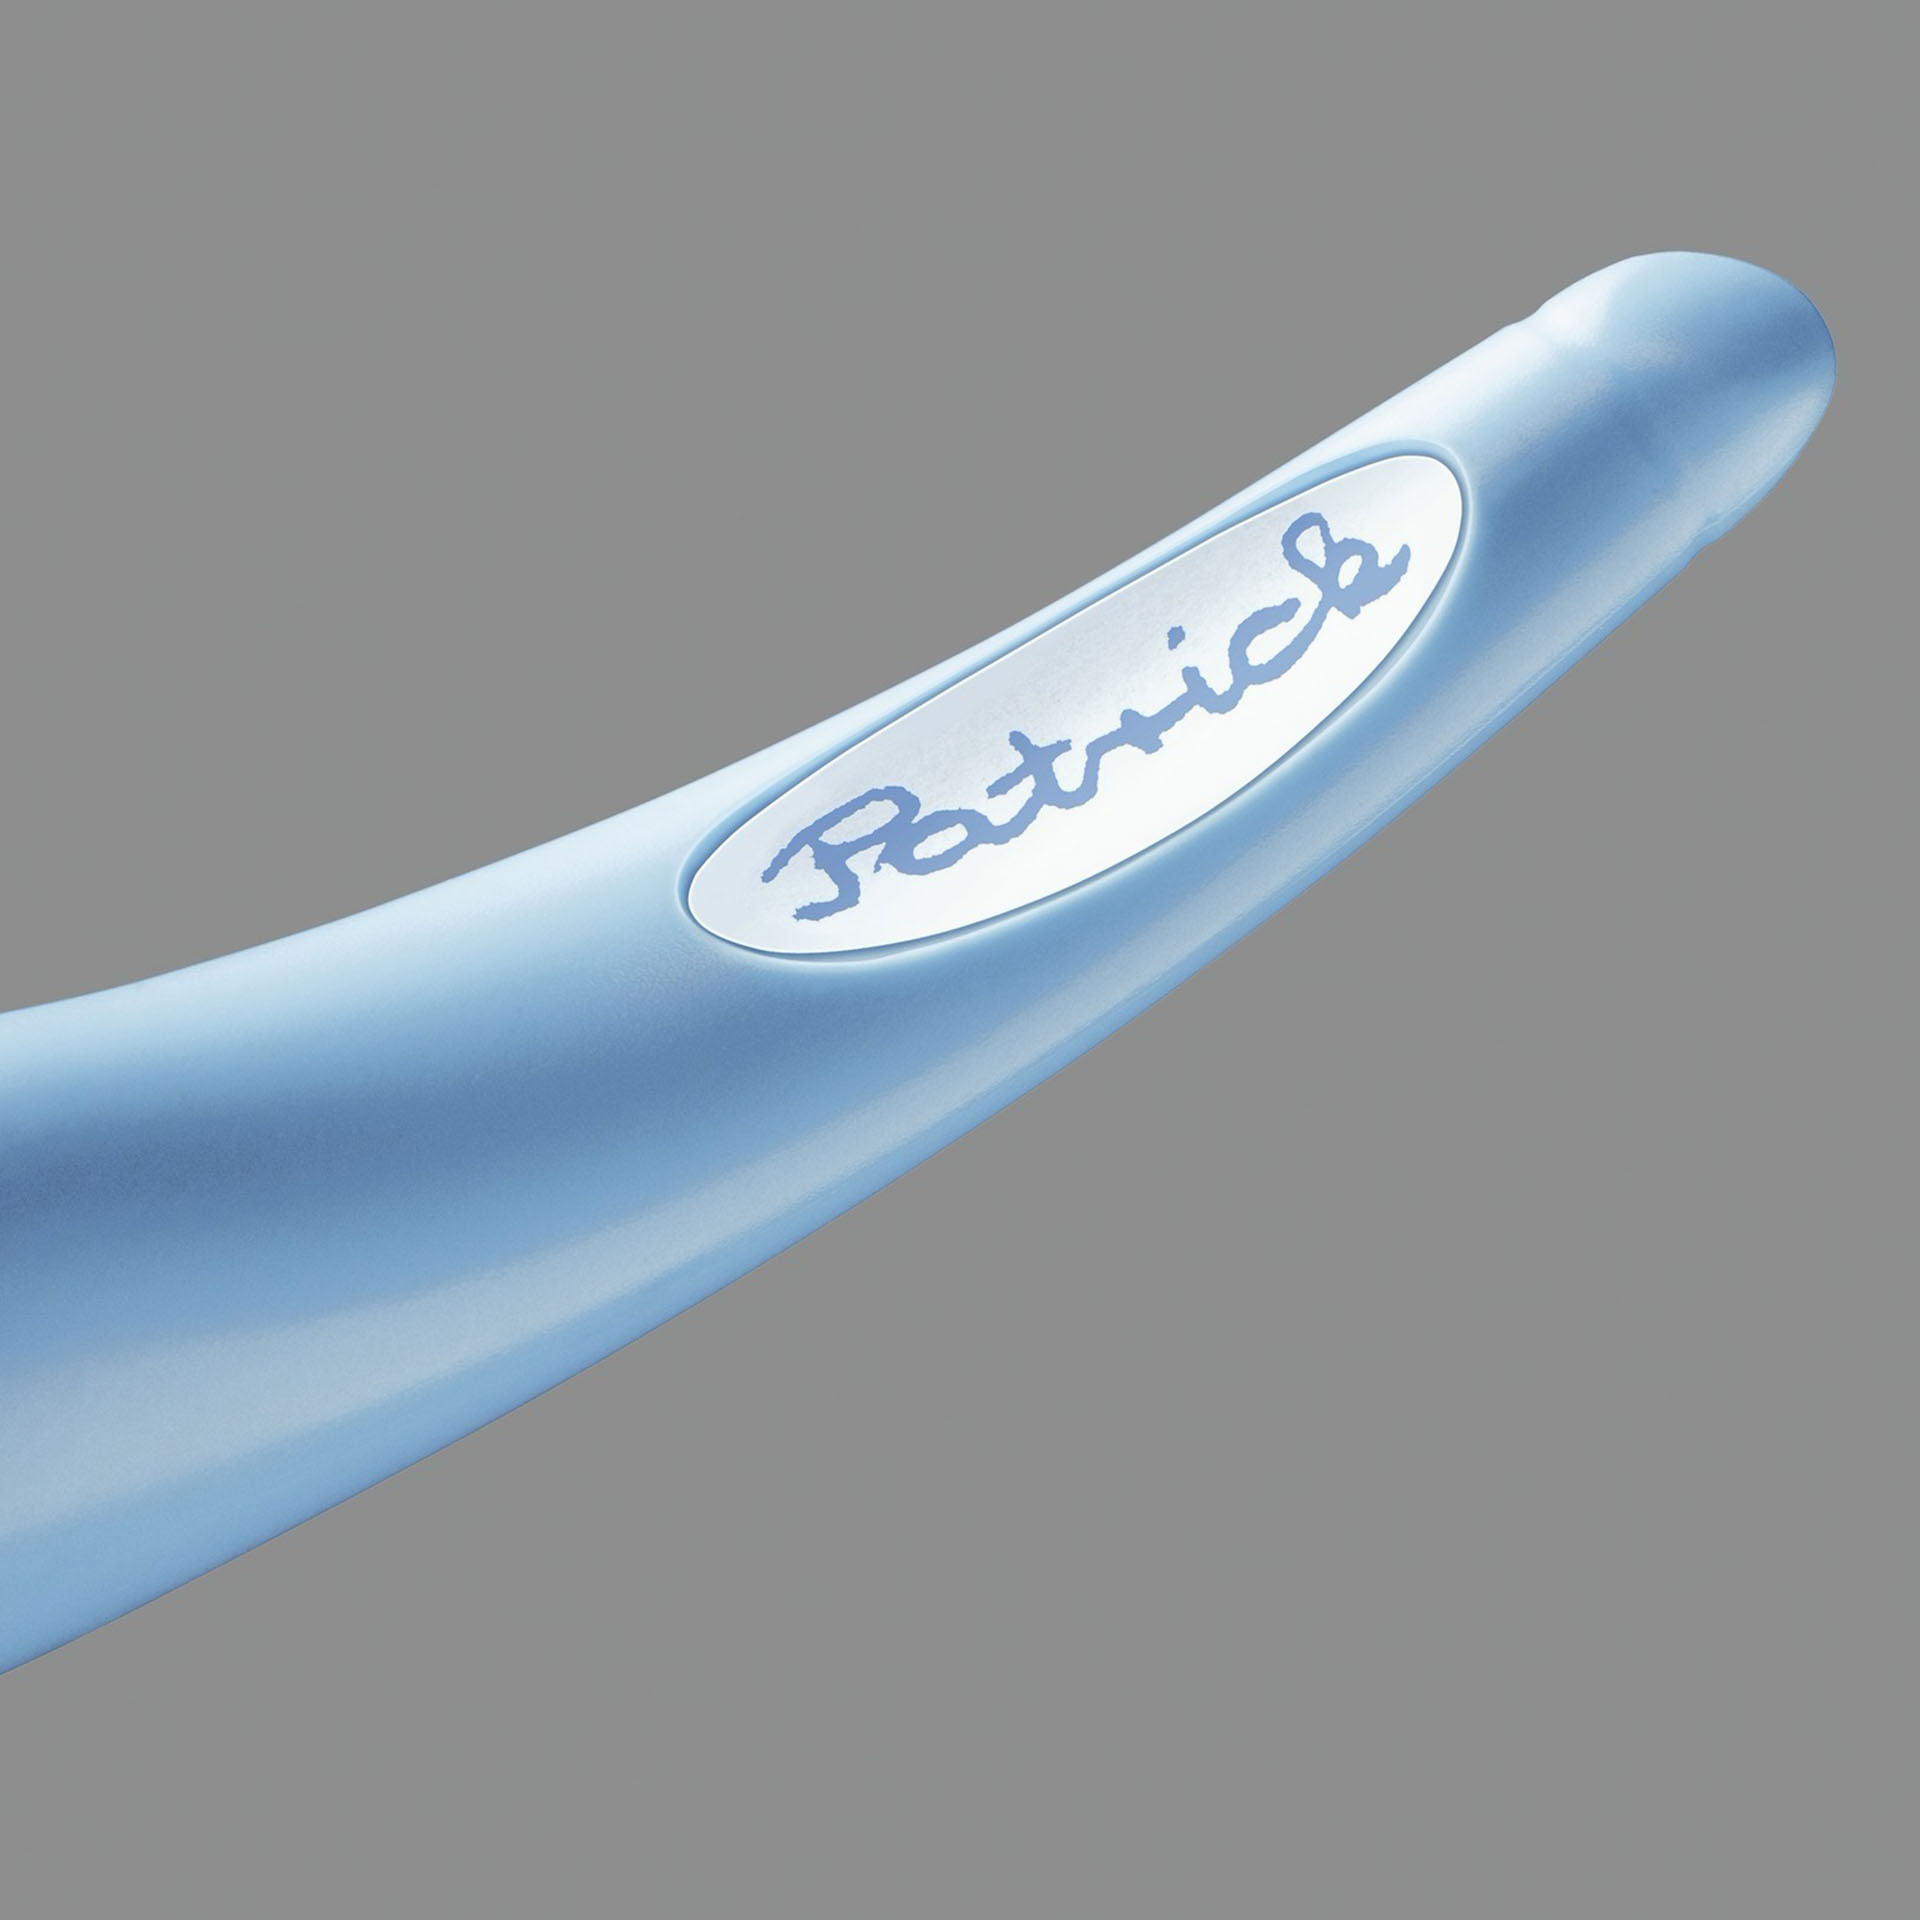 Penna Roller Ergonomica - Stabilo Easyoriginal Per Mancini In Blu/azzurro - Cartuccia Blu Inclusa, , large